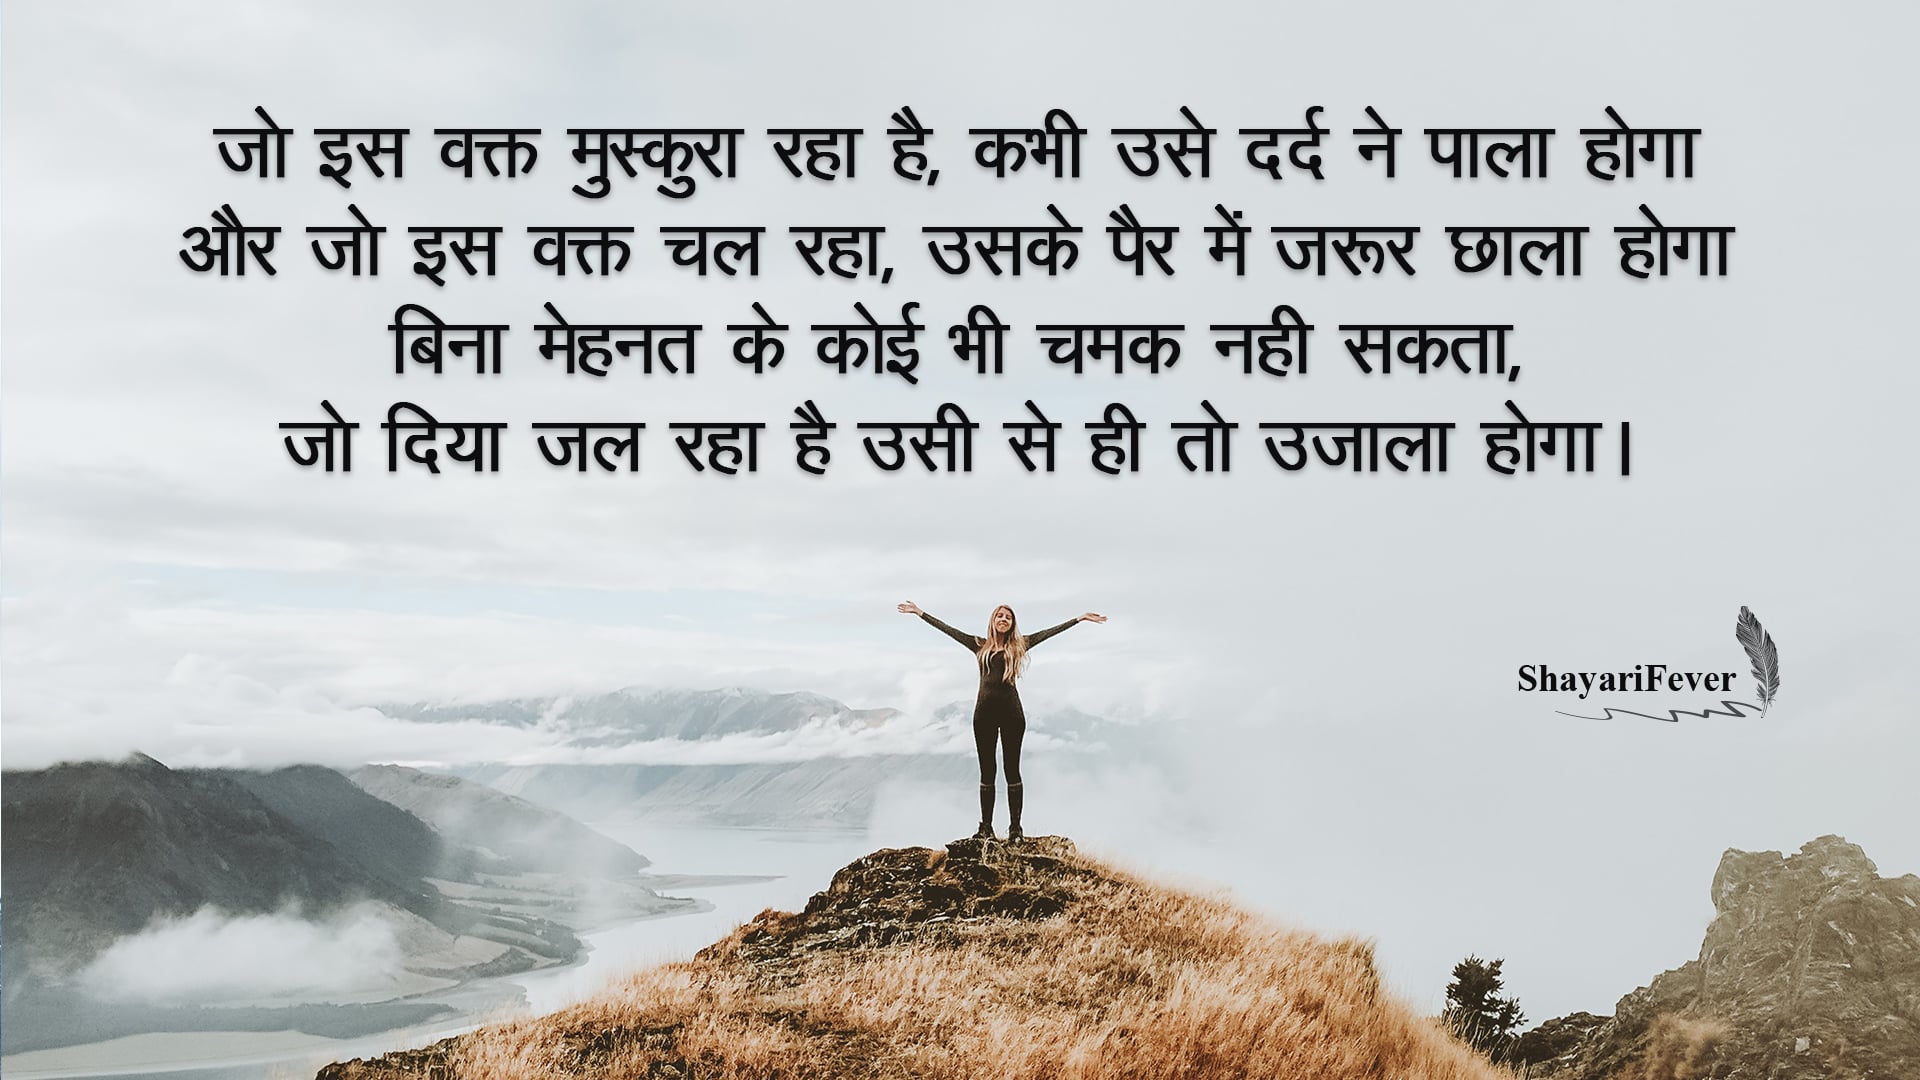 50+ Inspirational Shayari On Life (2022) - Motivational Shayari in Hindi